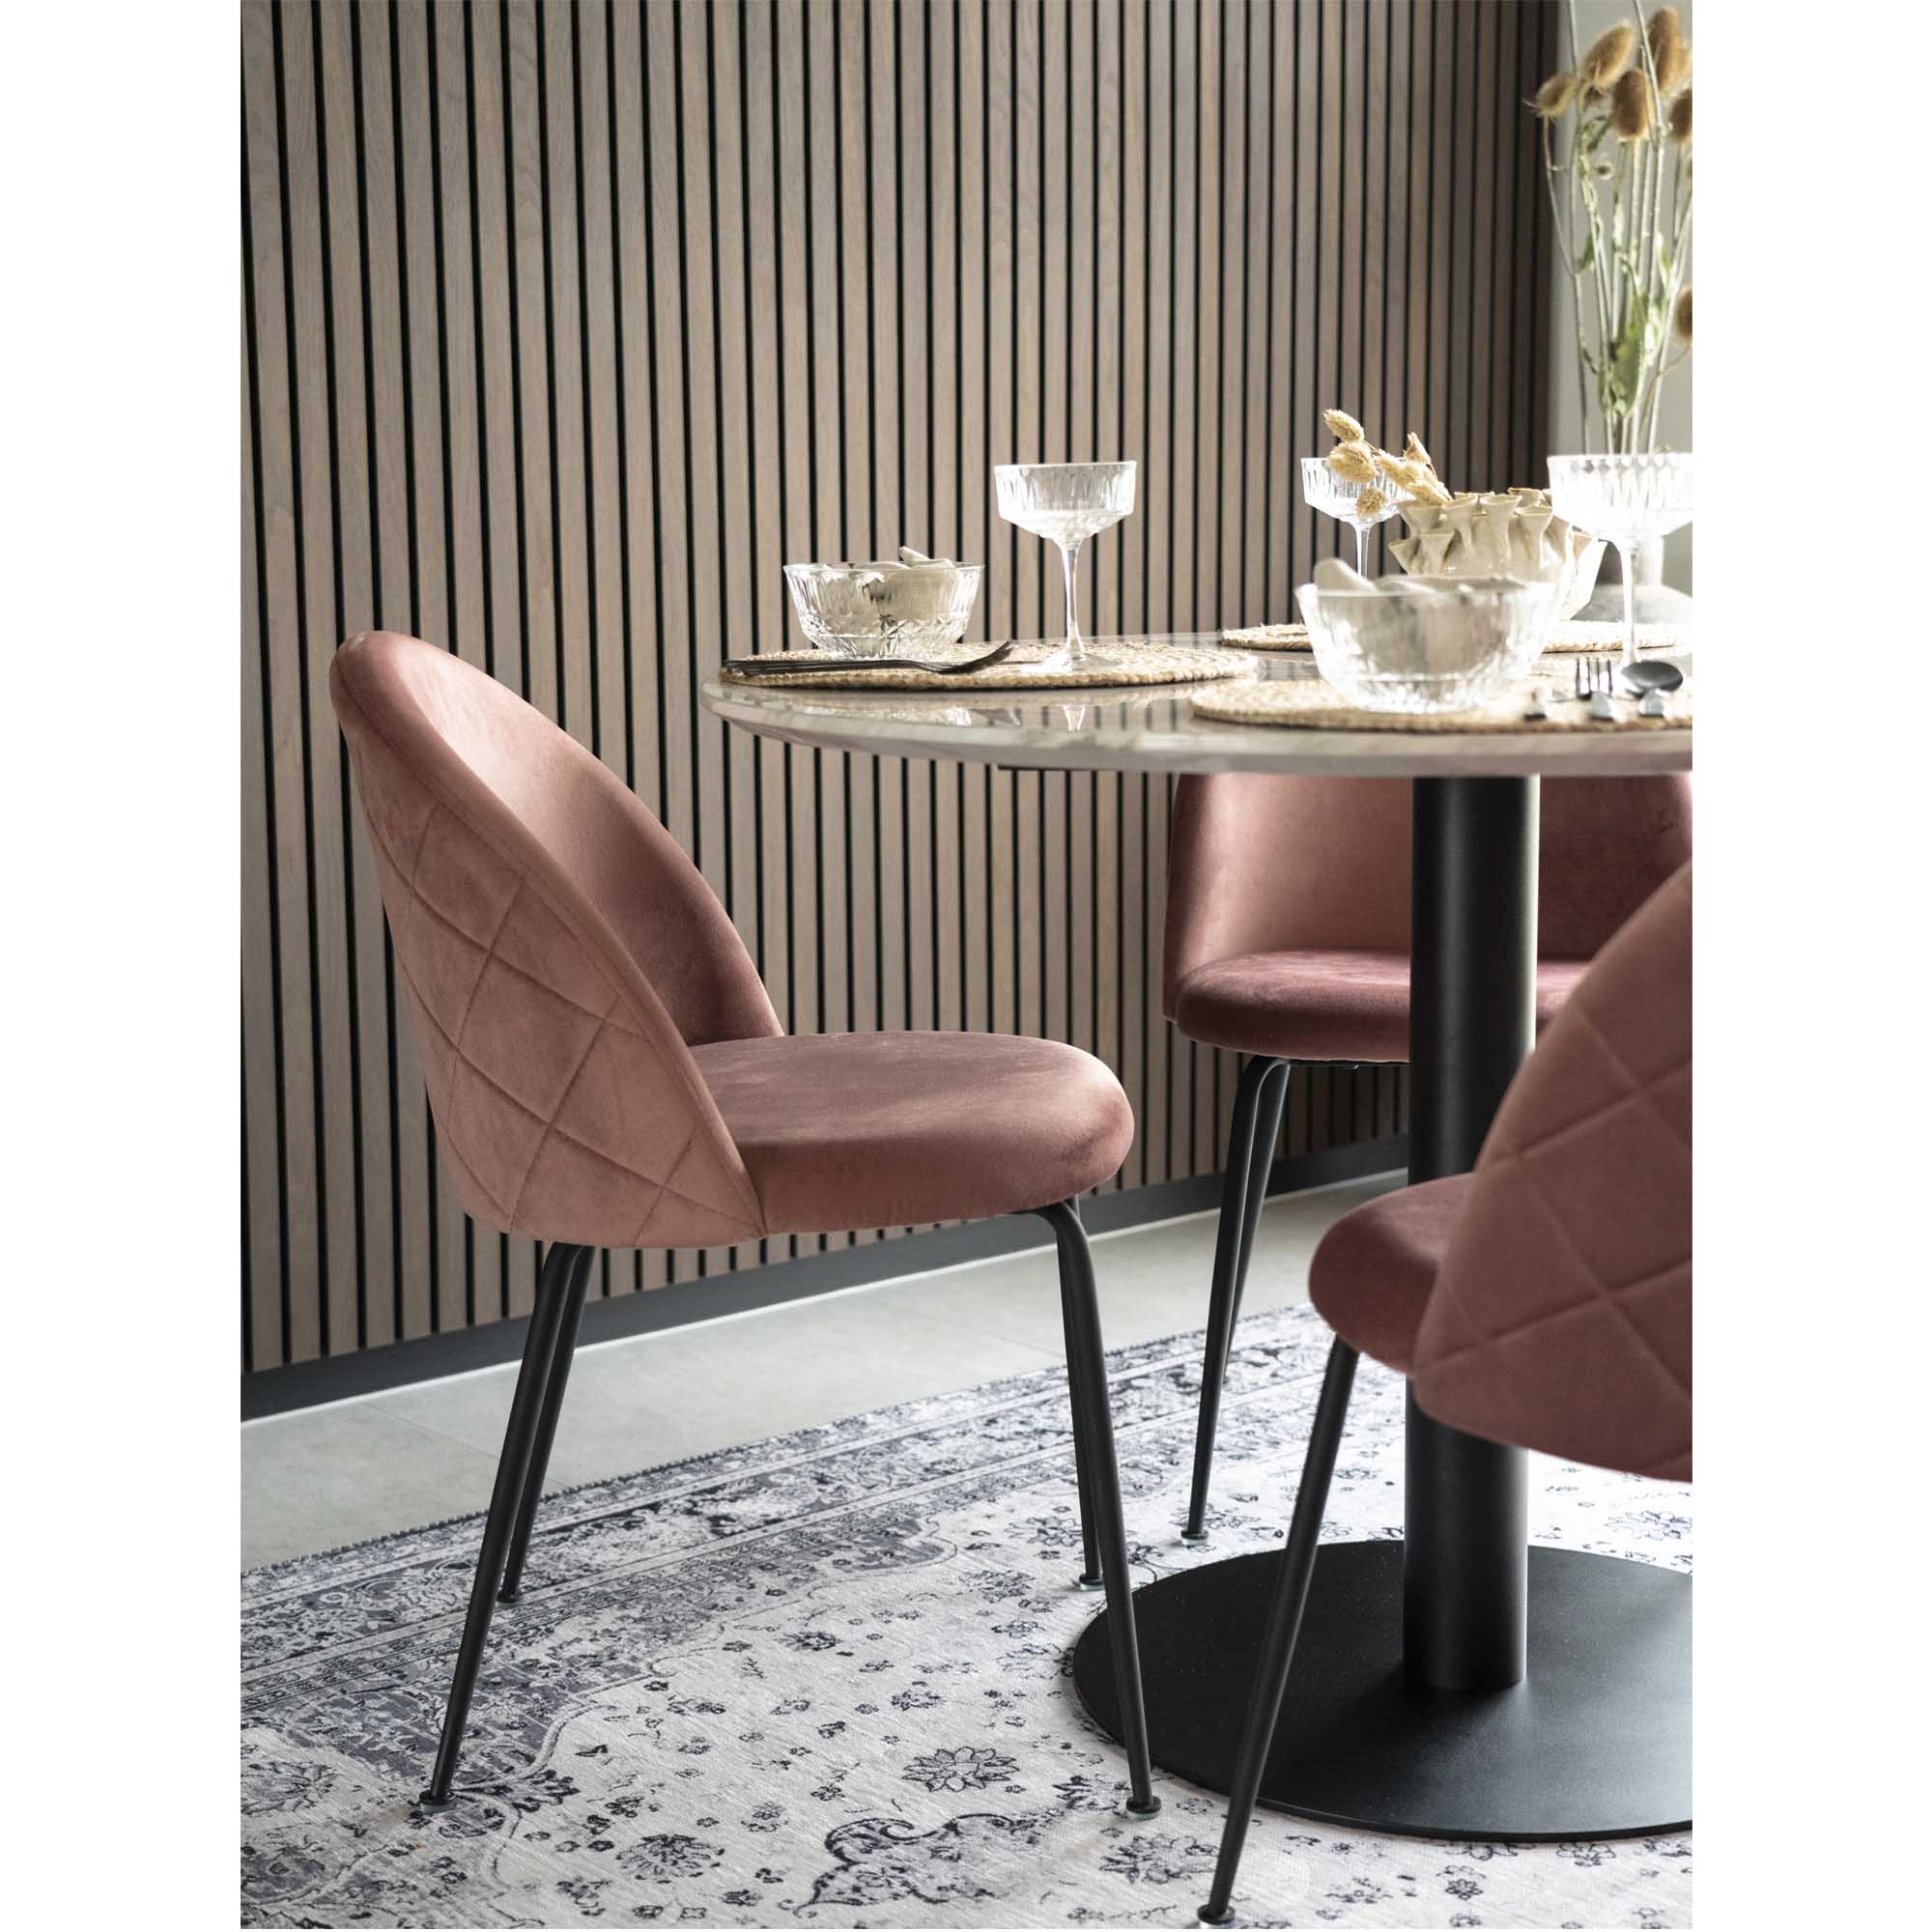 Velvet stoel - roze